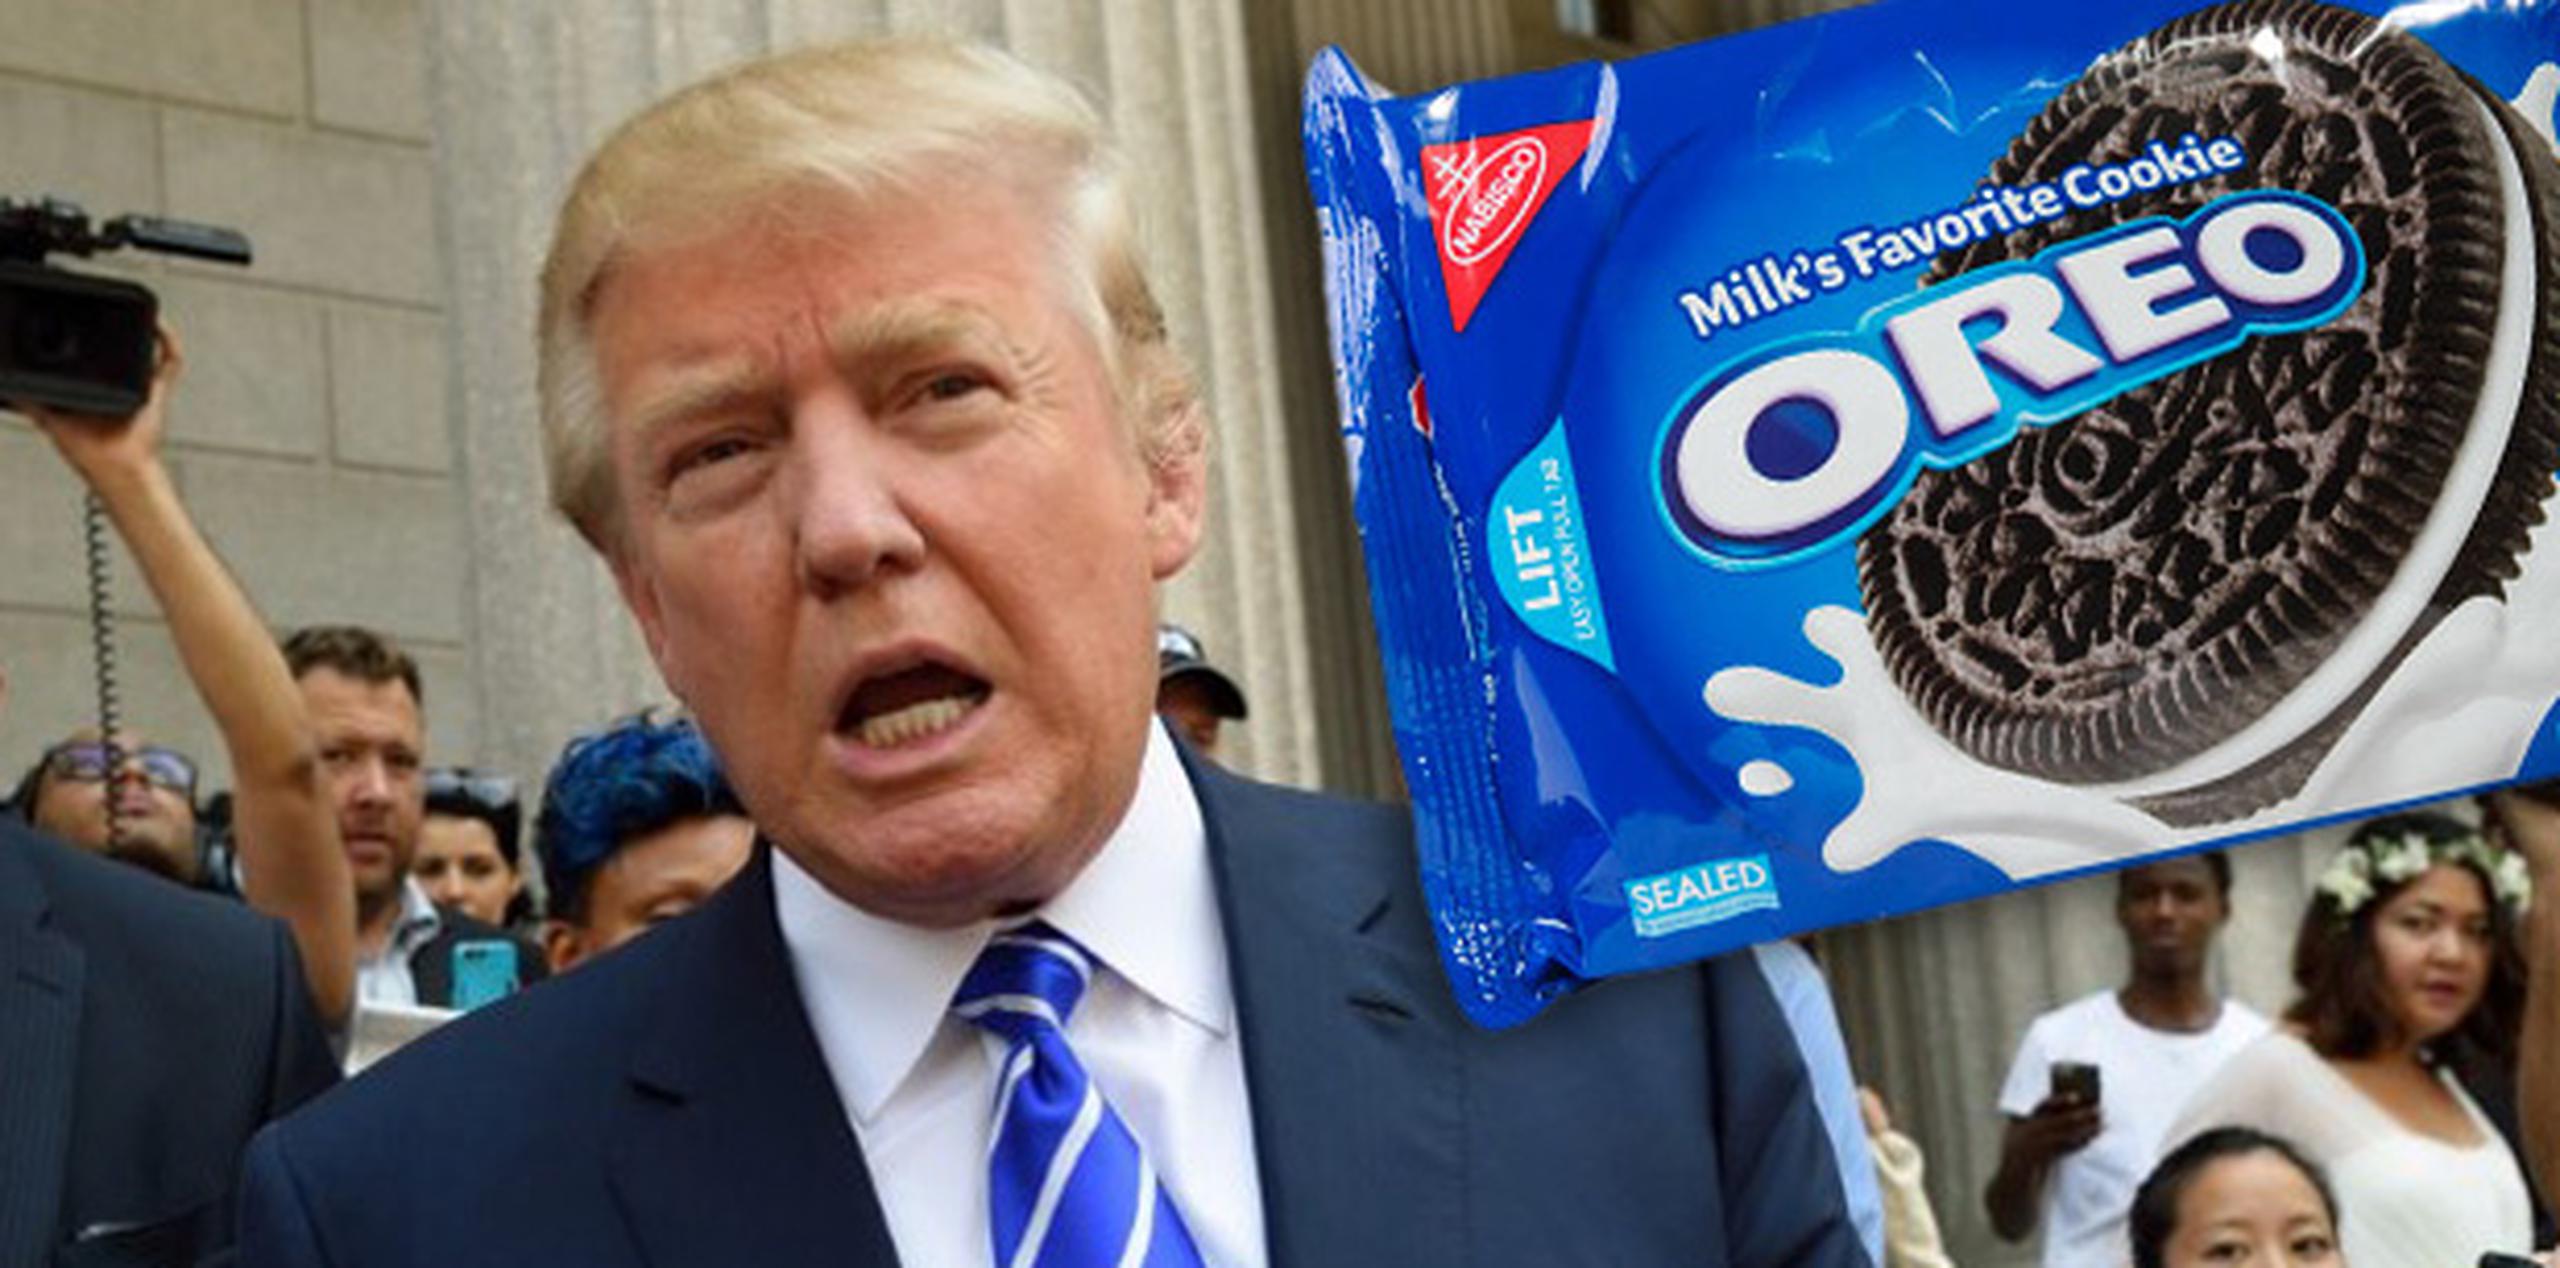 "Nunca volveré a comer galletas Oreo", dijo Trump, antes de agregar que lo consideraría si pudiera encontrar algunas fabricadas en Estados Unidos. (AFP/Montaje)